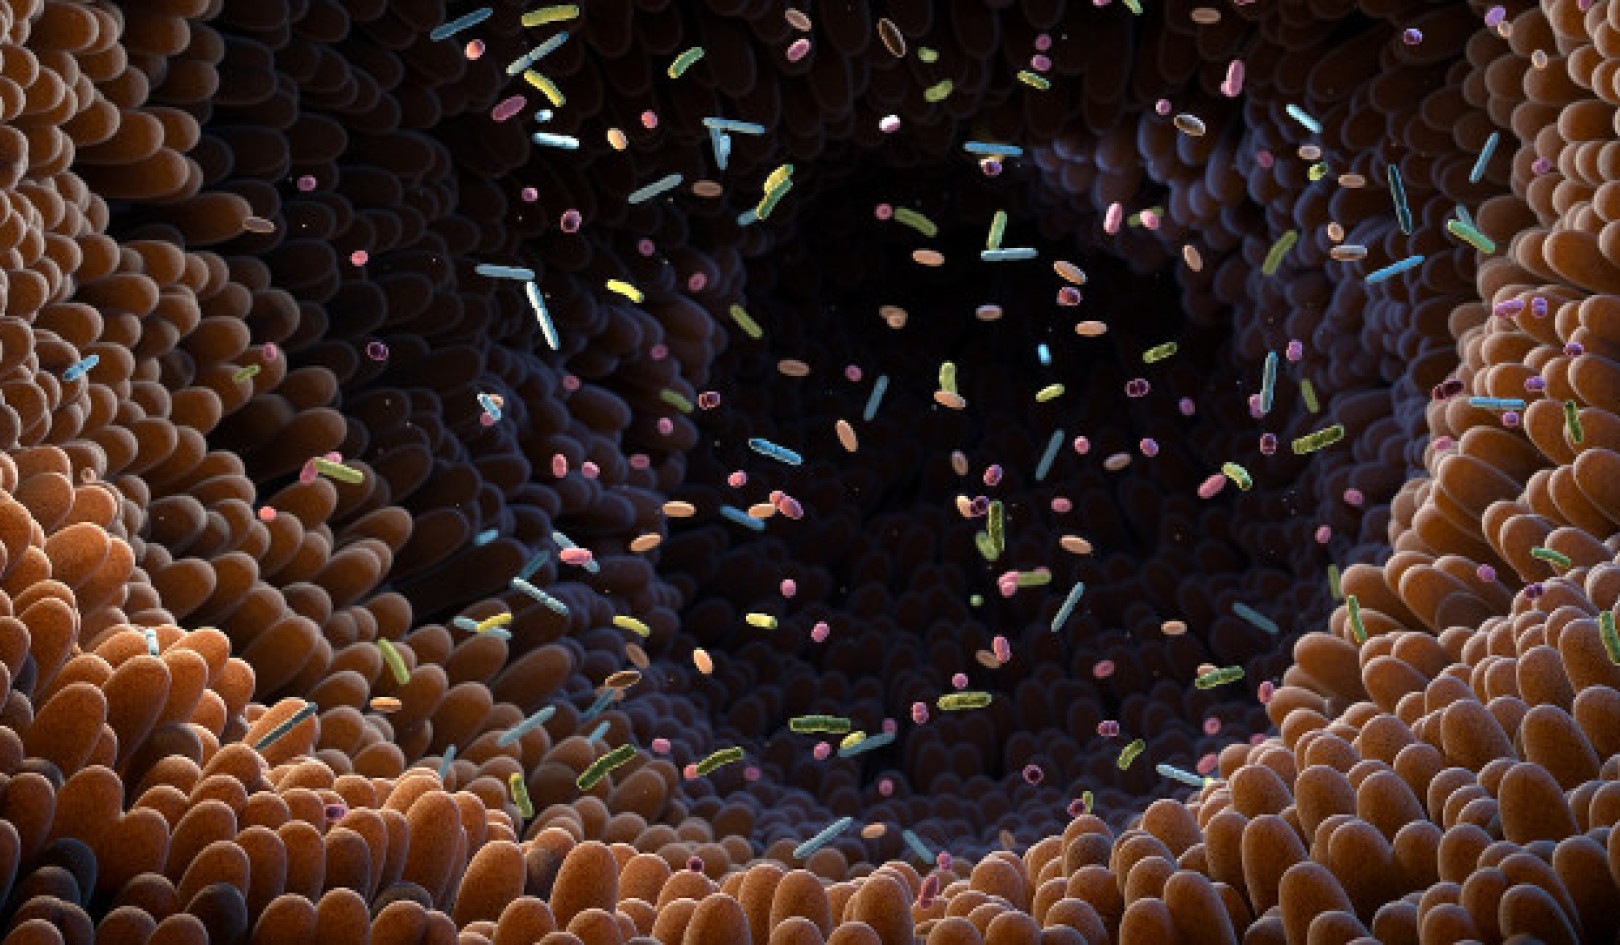 Deblocarea potențialului microbiomului intestinal: Implicații pentru sănătate și tratament